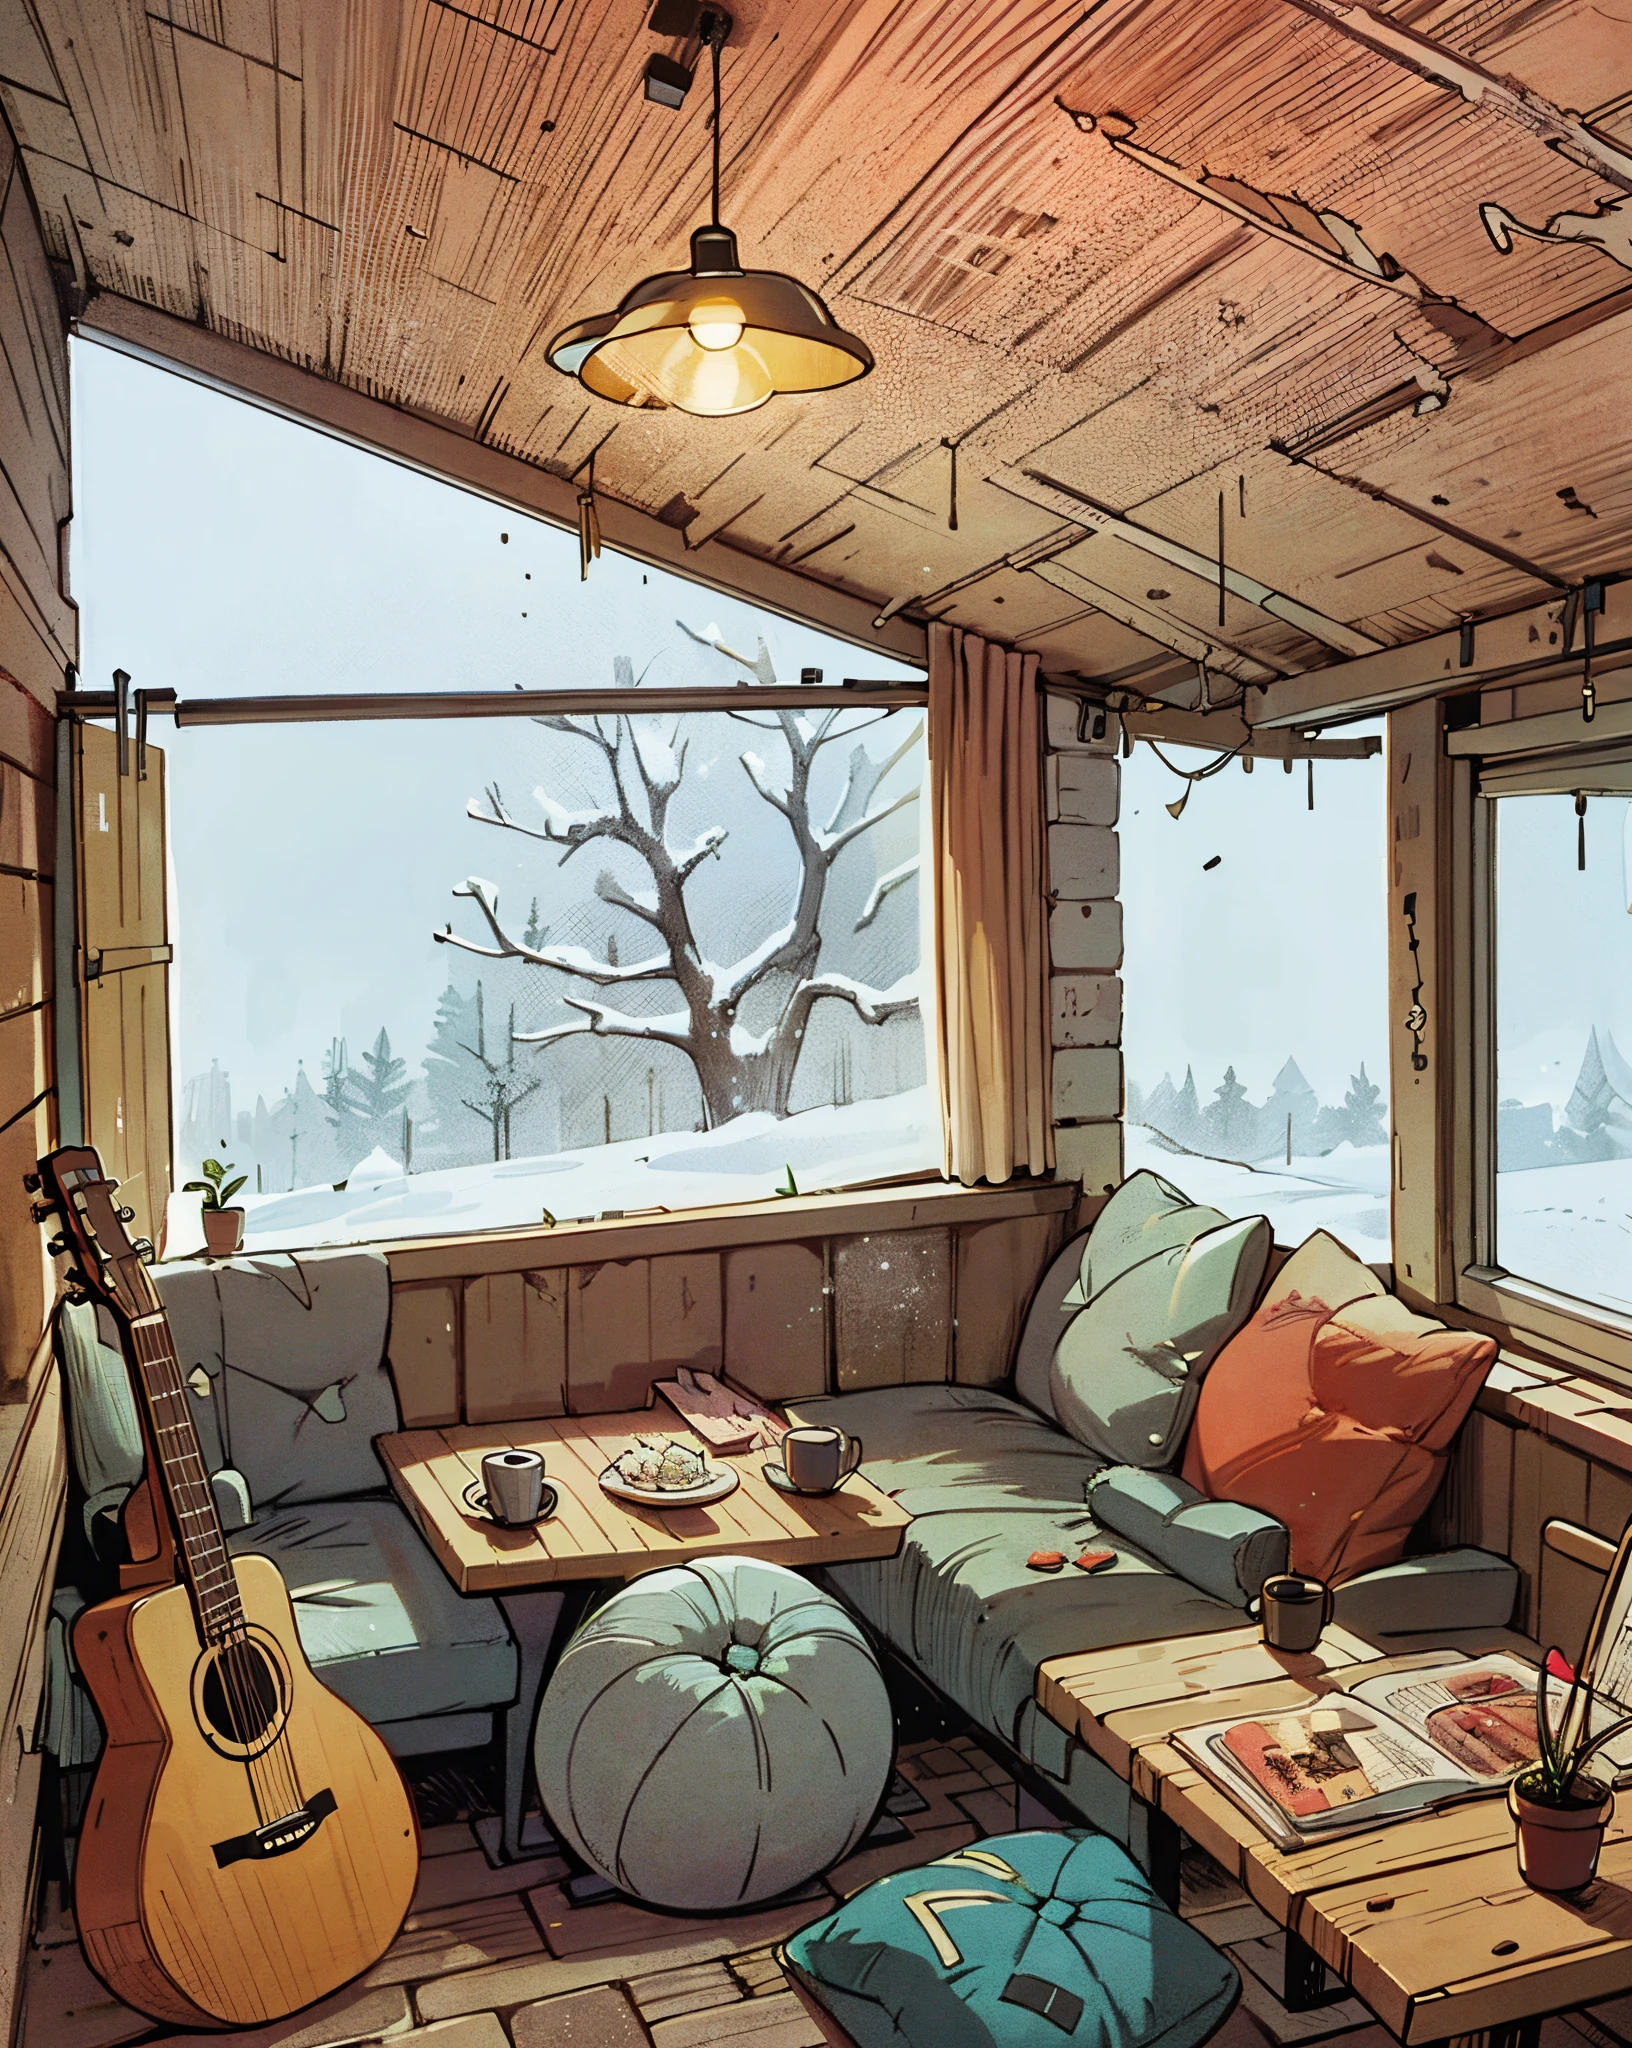 休闲室. 很多枕头 . 桌上的吉他和咖啡. 窗户很大，外面有雪. 動漫背景. 漫畫頁